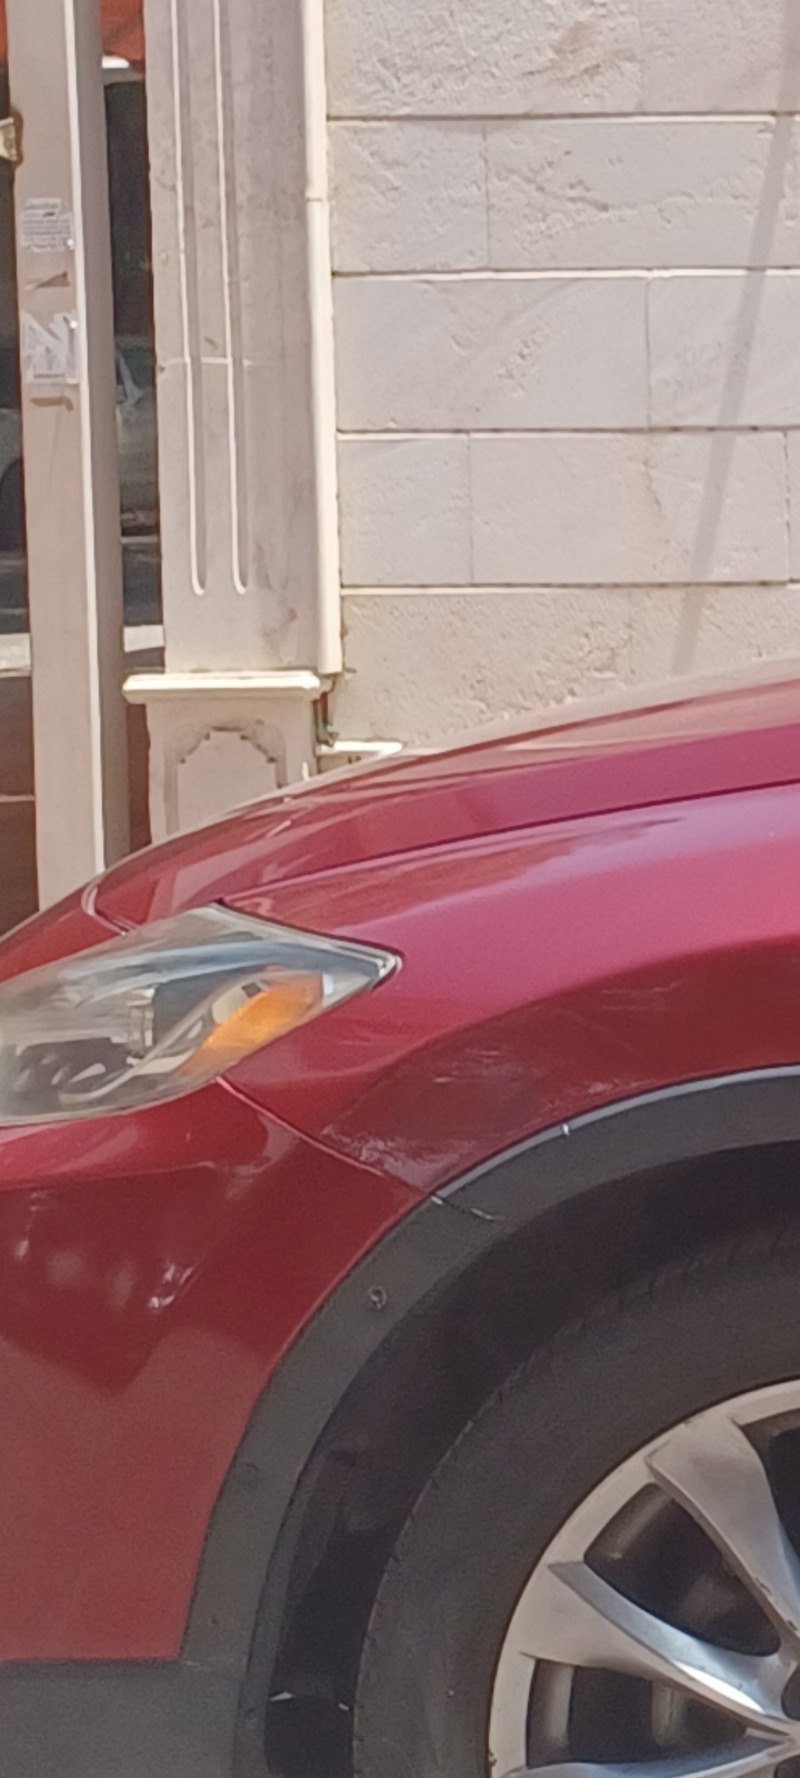 Used 2015 Mazda CX-9 for sale in Jeddah